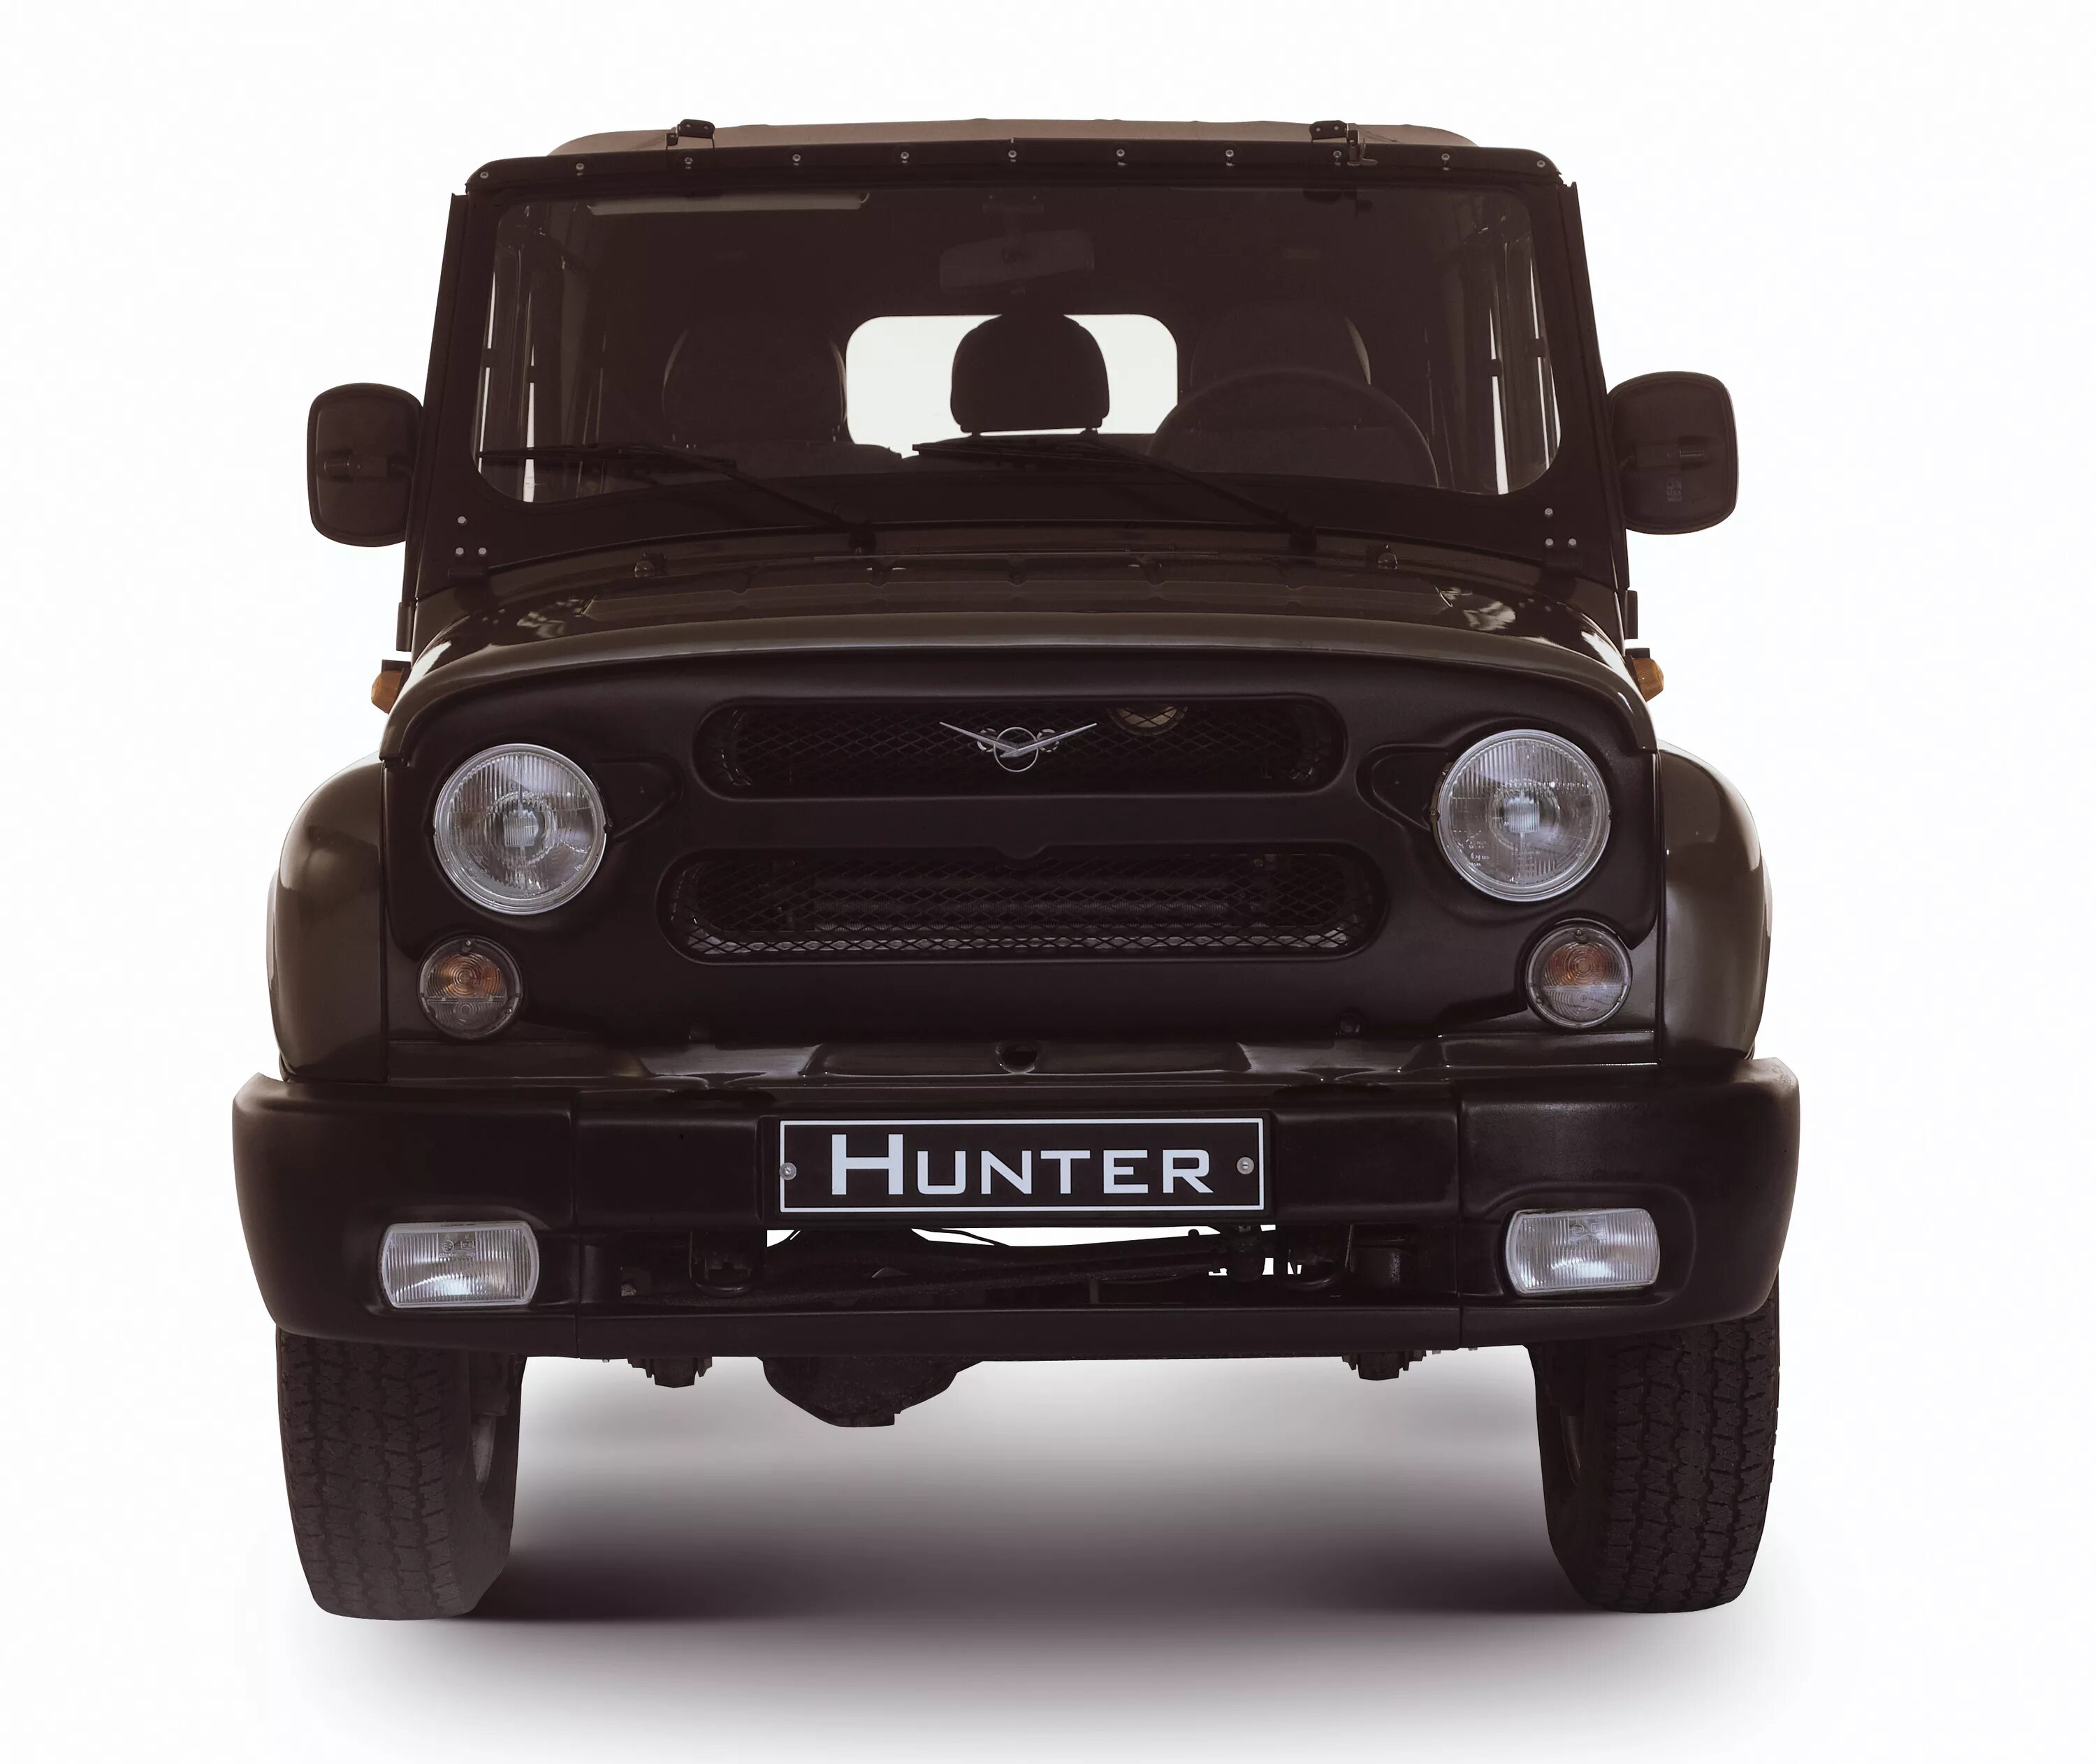 УАЗ-315195 «Хантер». UAZ Hunter 315195. УАЗ Hunter 315195. УАЗ Хантер спереди.